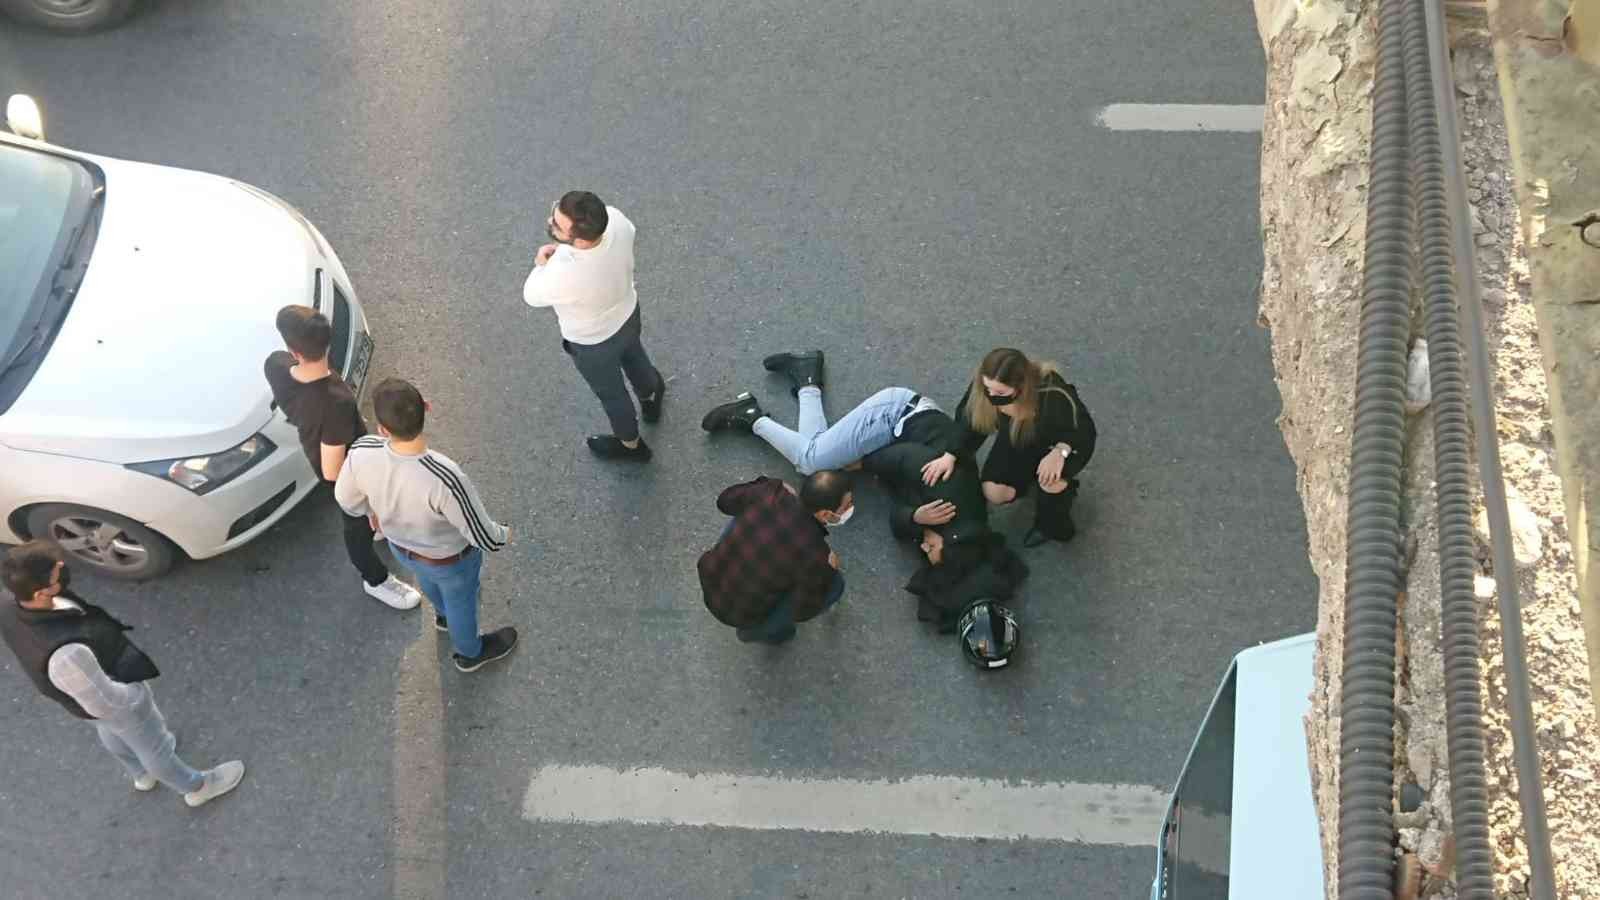 Tuzla’da motosiklet sürücüsü kadın, minibüse çarpıp yaralandı #istanbul